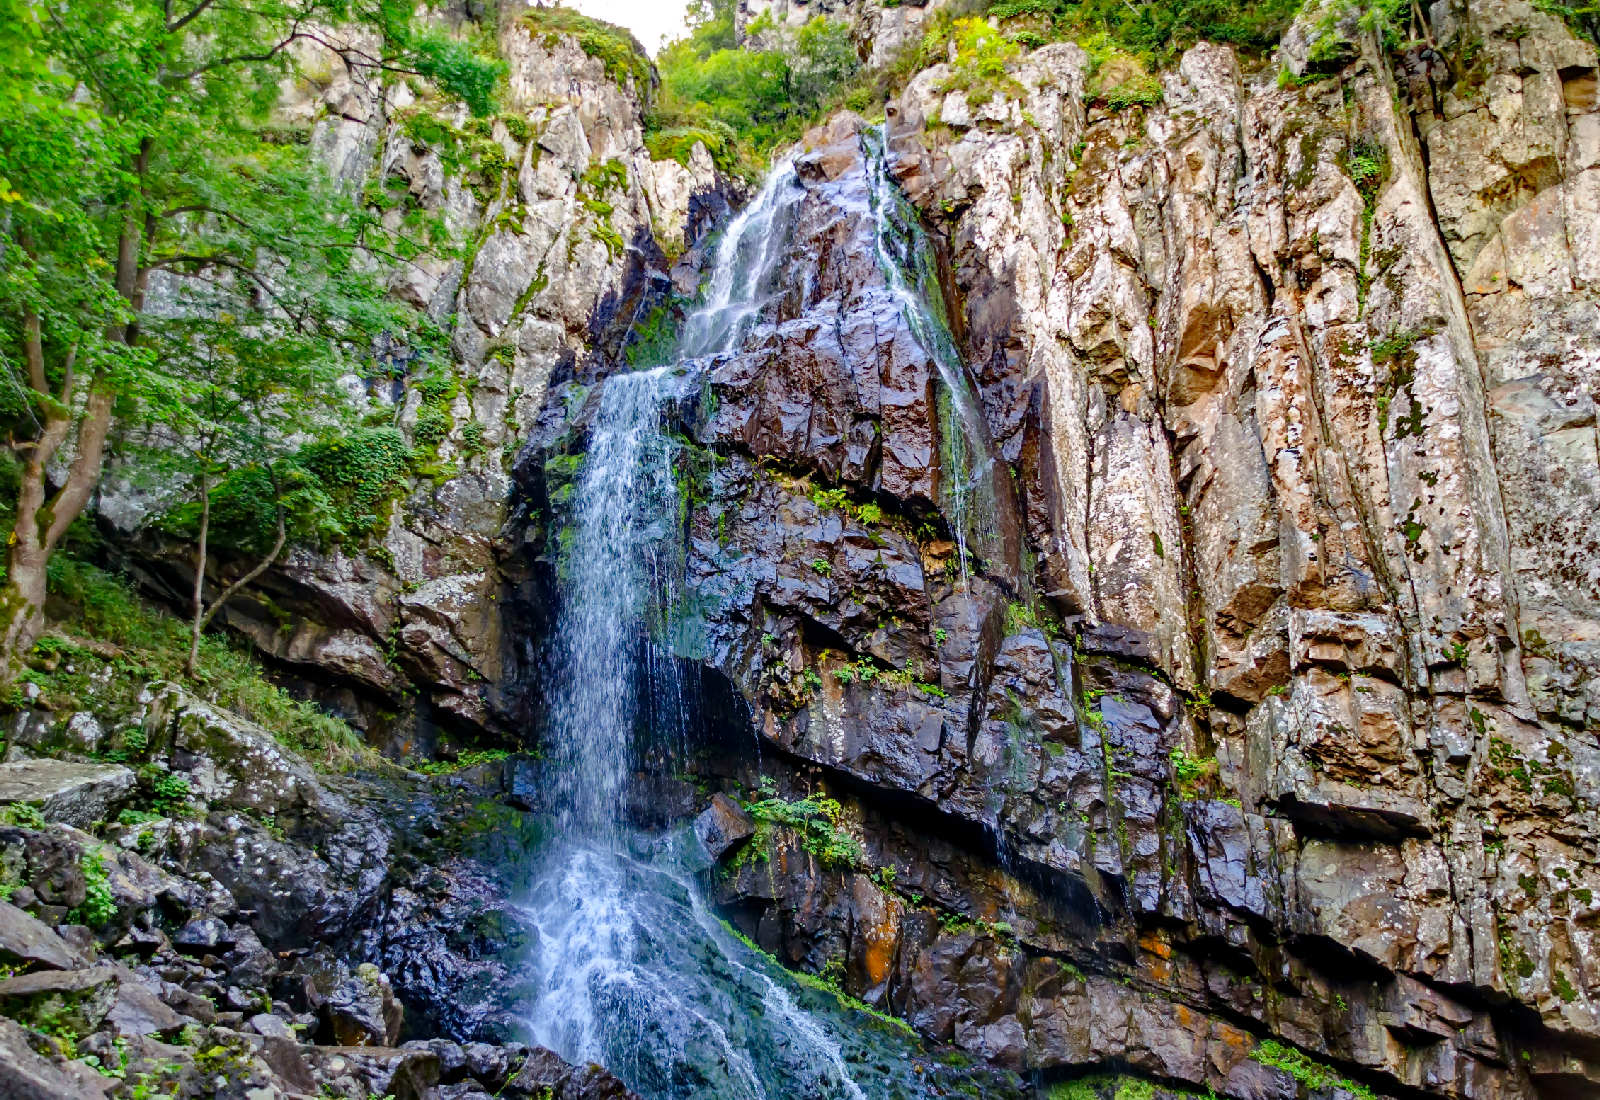 Туристически маршрут кв. Бояна - Боянско езеро - Боянски водопад - хижа Момина скала